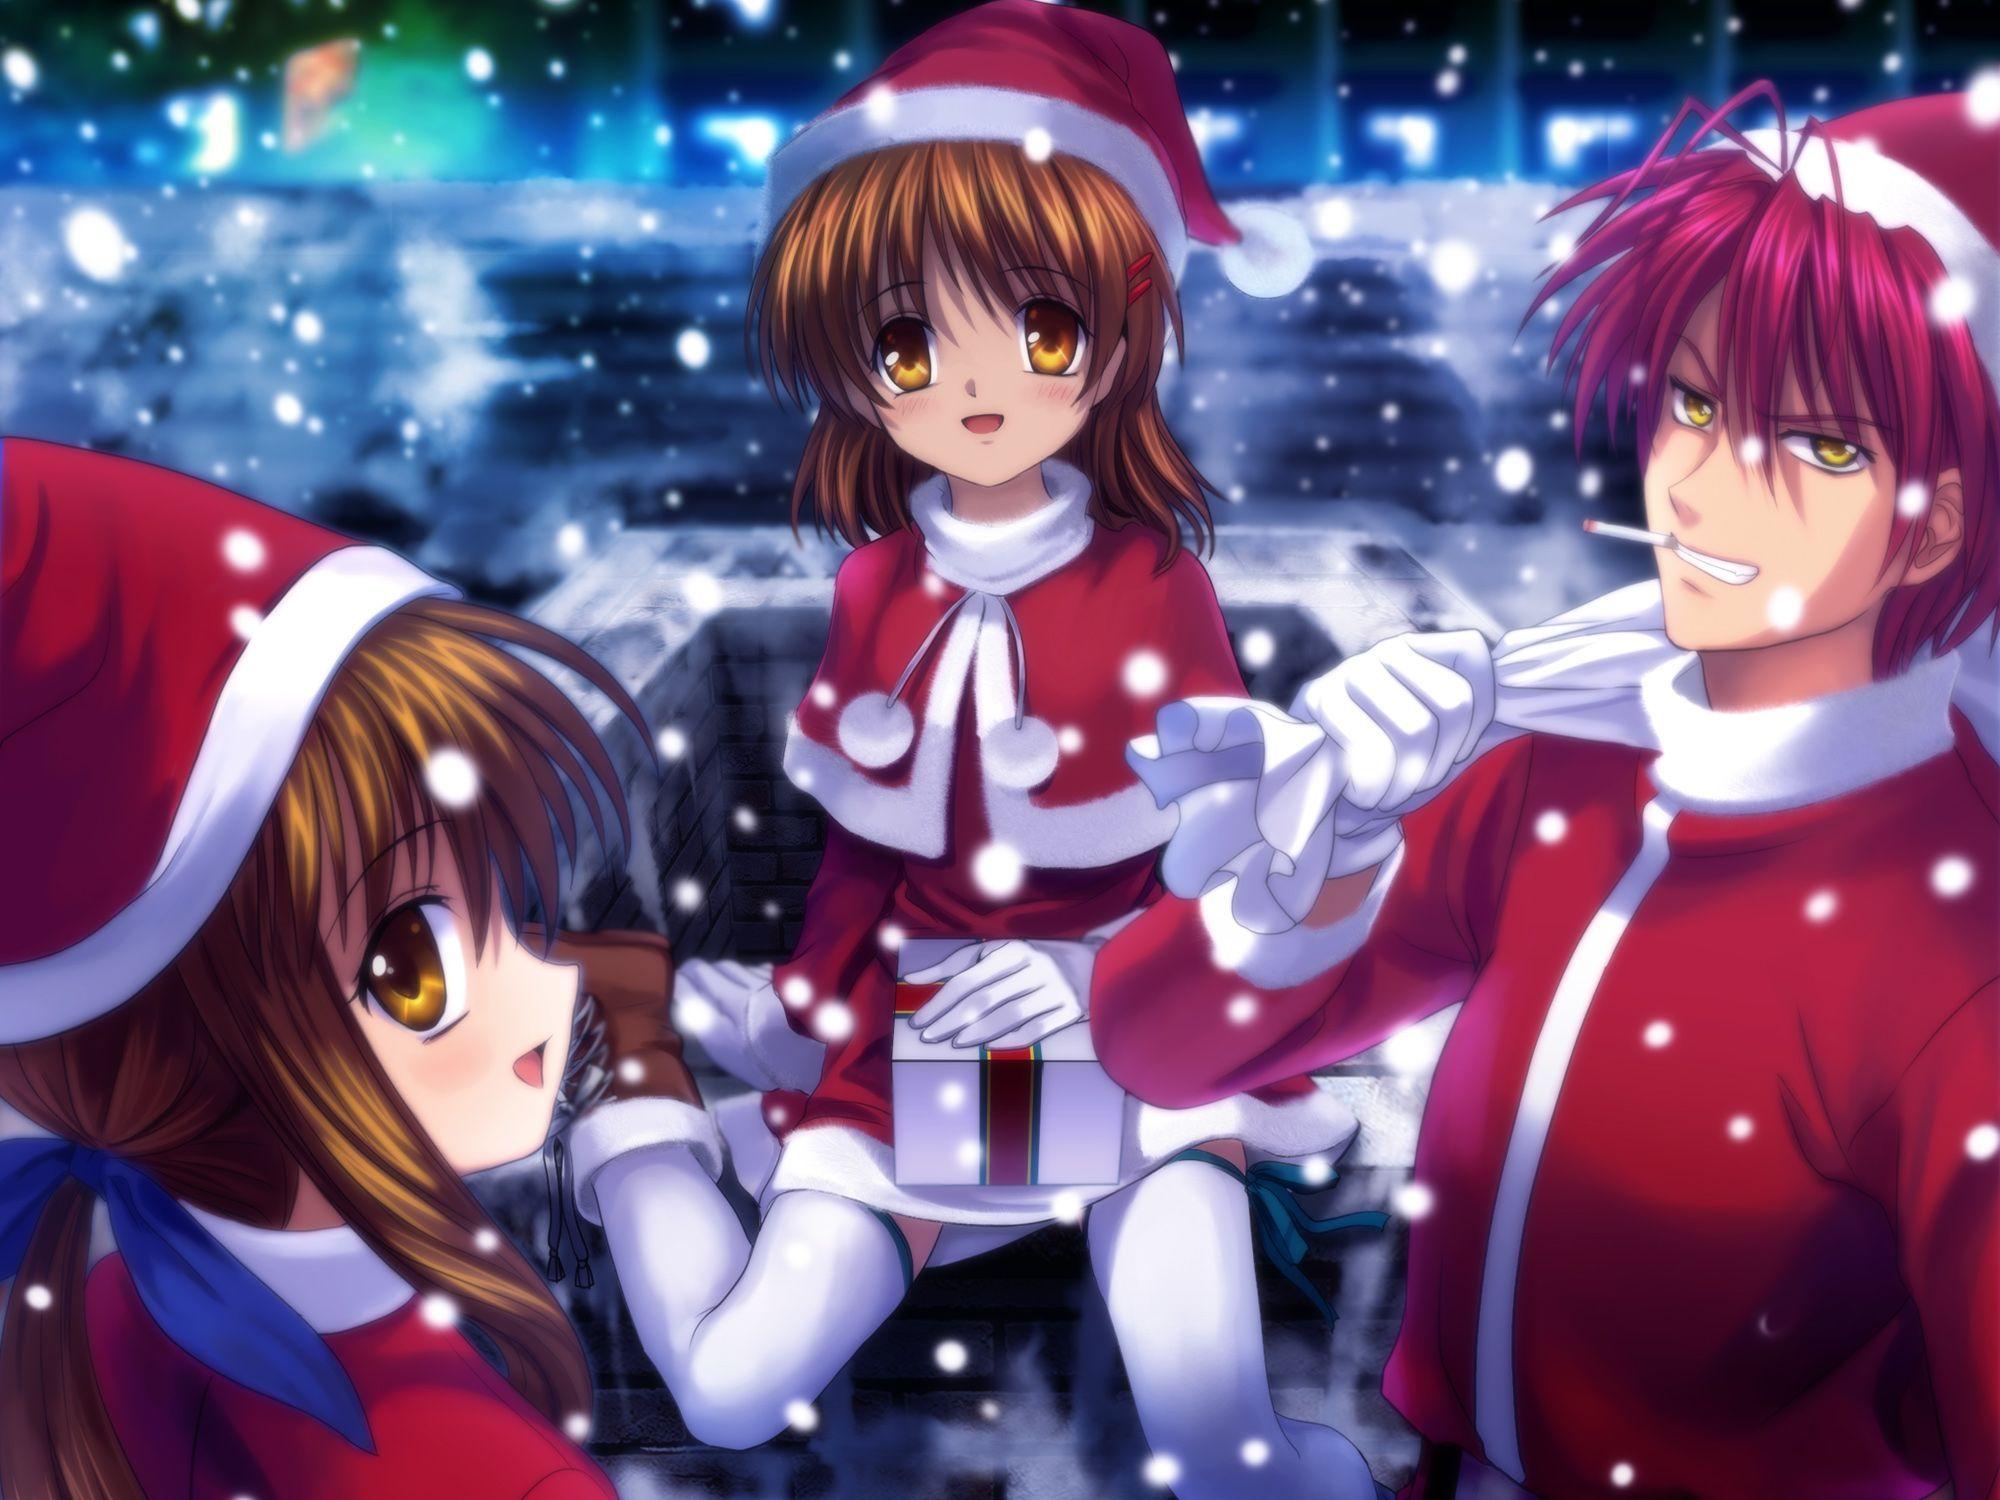 Anime Christmas Wallpaper Desktop. Anime, HD anime wallpaper, Christmas wallpaper